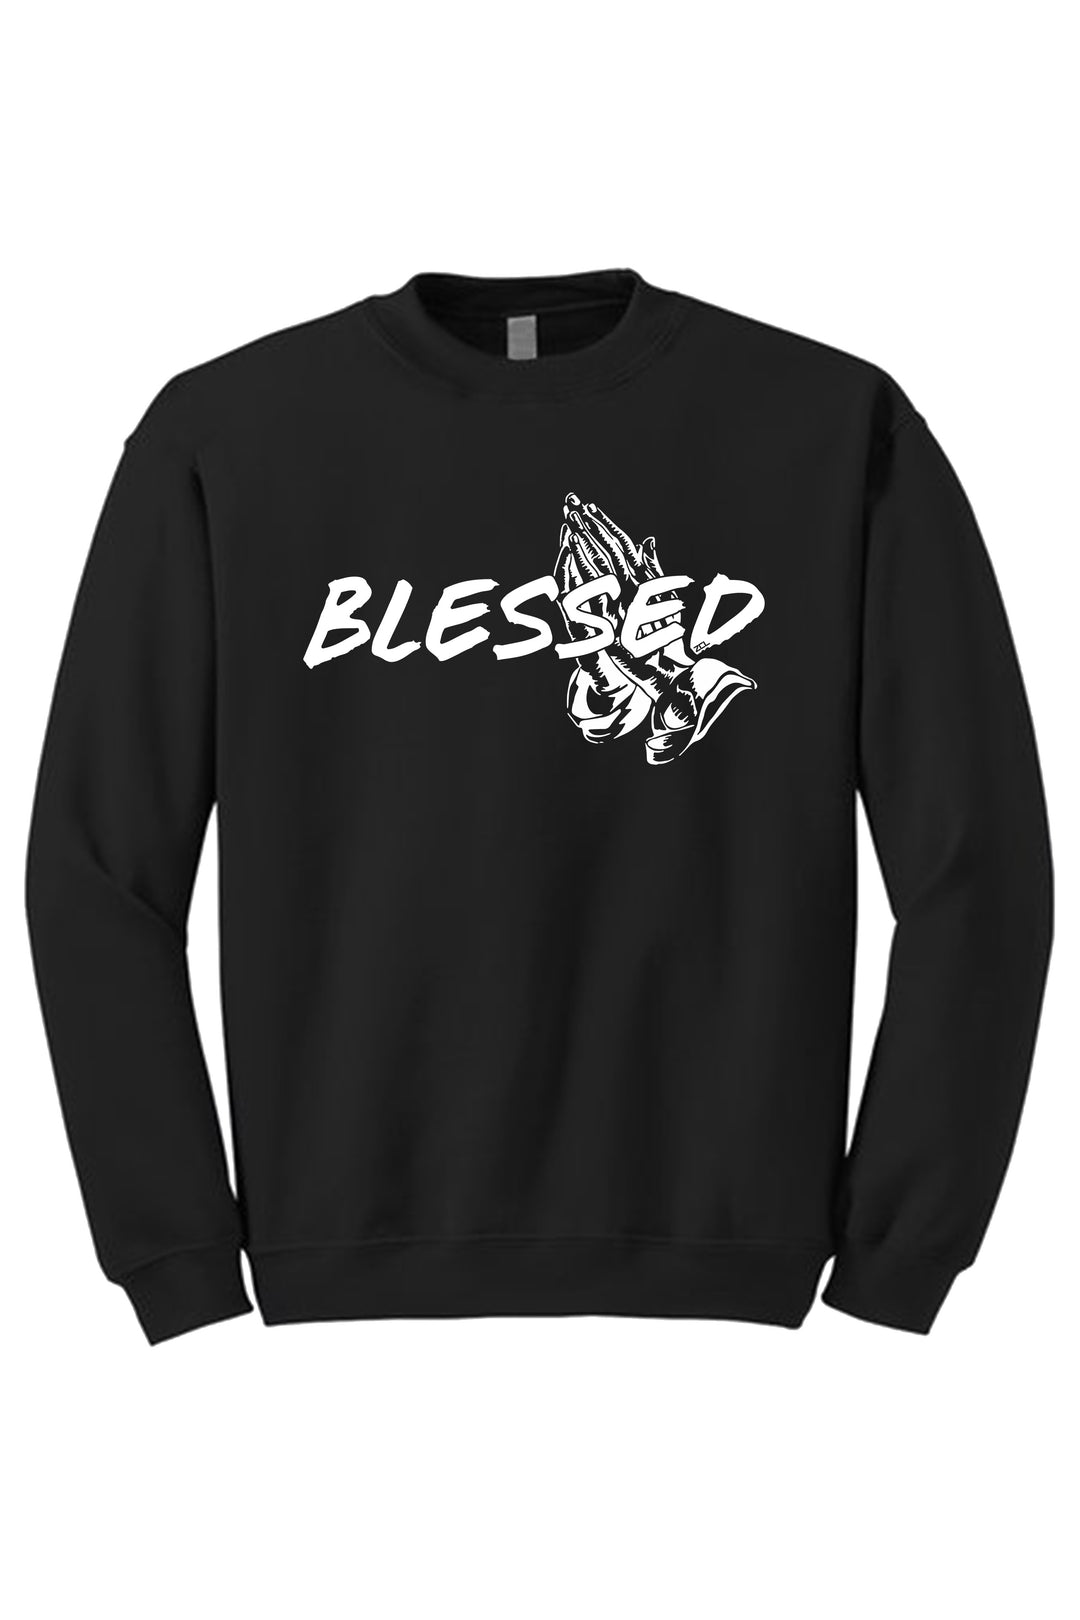 Blessed Crewneck Sweatshirt (White Logo) - Zamage